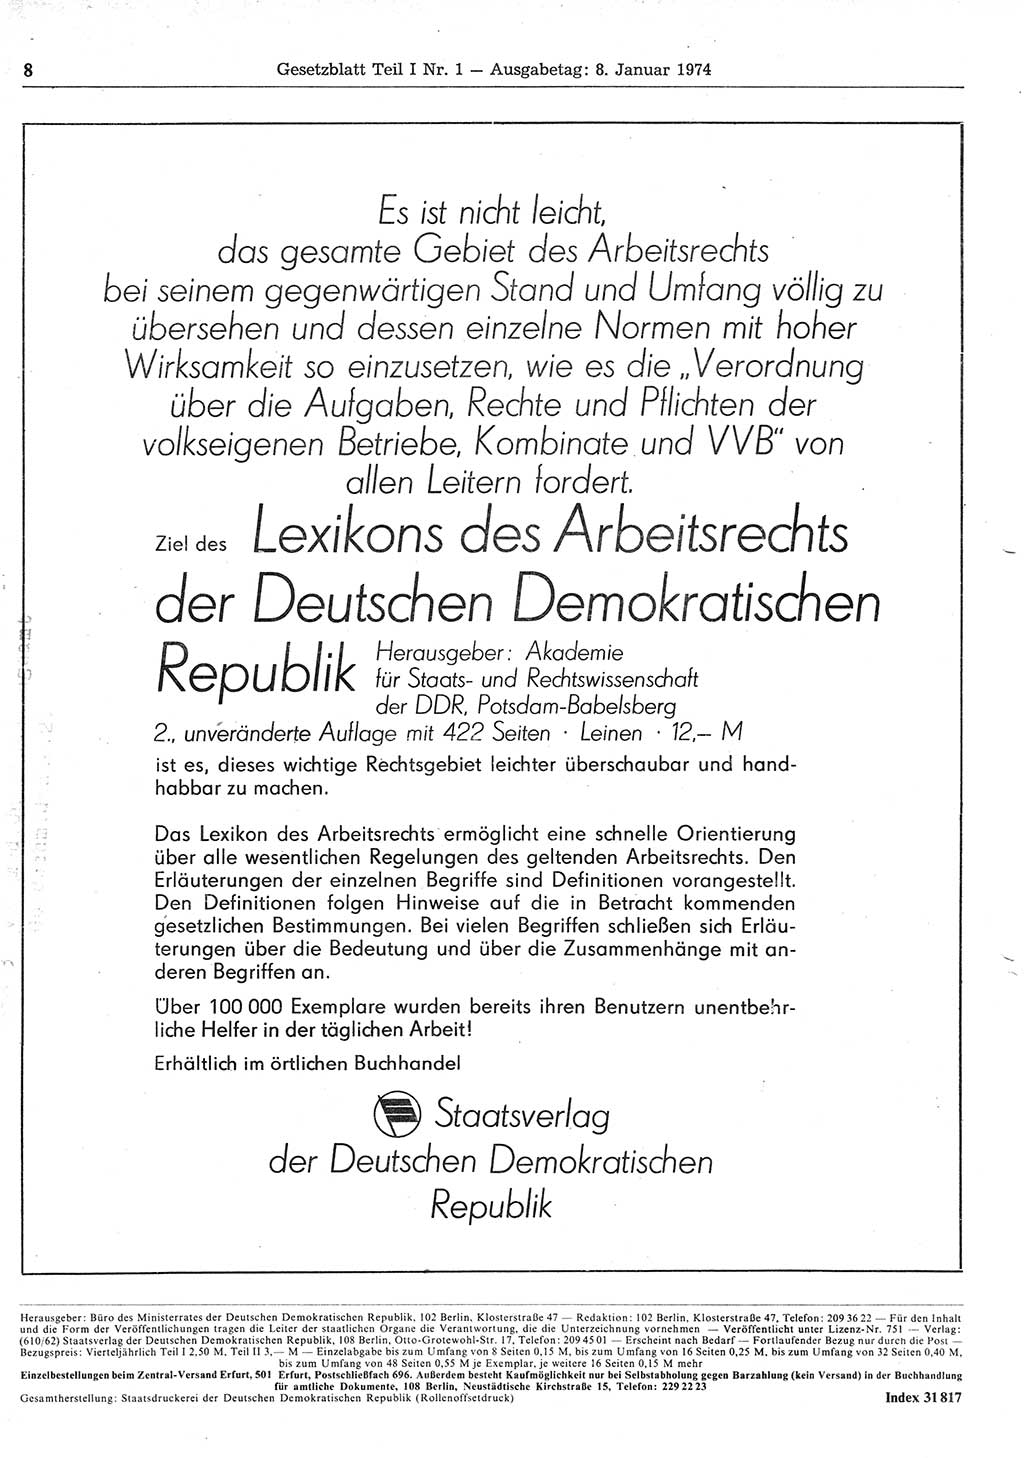 Gesetzblatt (GBl.) der Deutschen Demokratischen Republik (DDR) Teil Ⅰ 1974, Seite 8 (GBl. DDR Ⅰ 1974, S. 8)